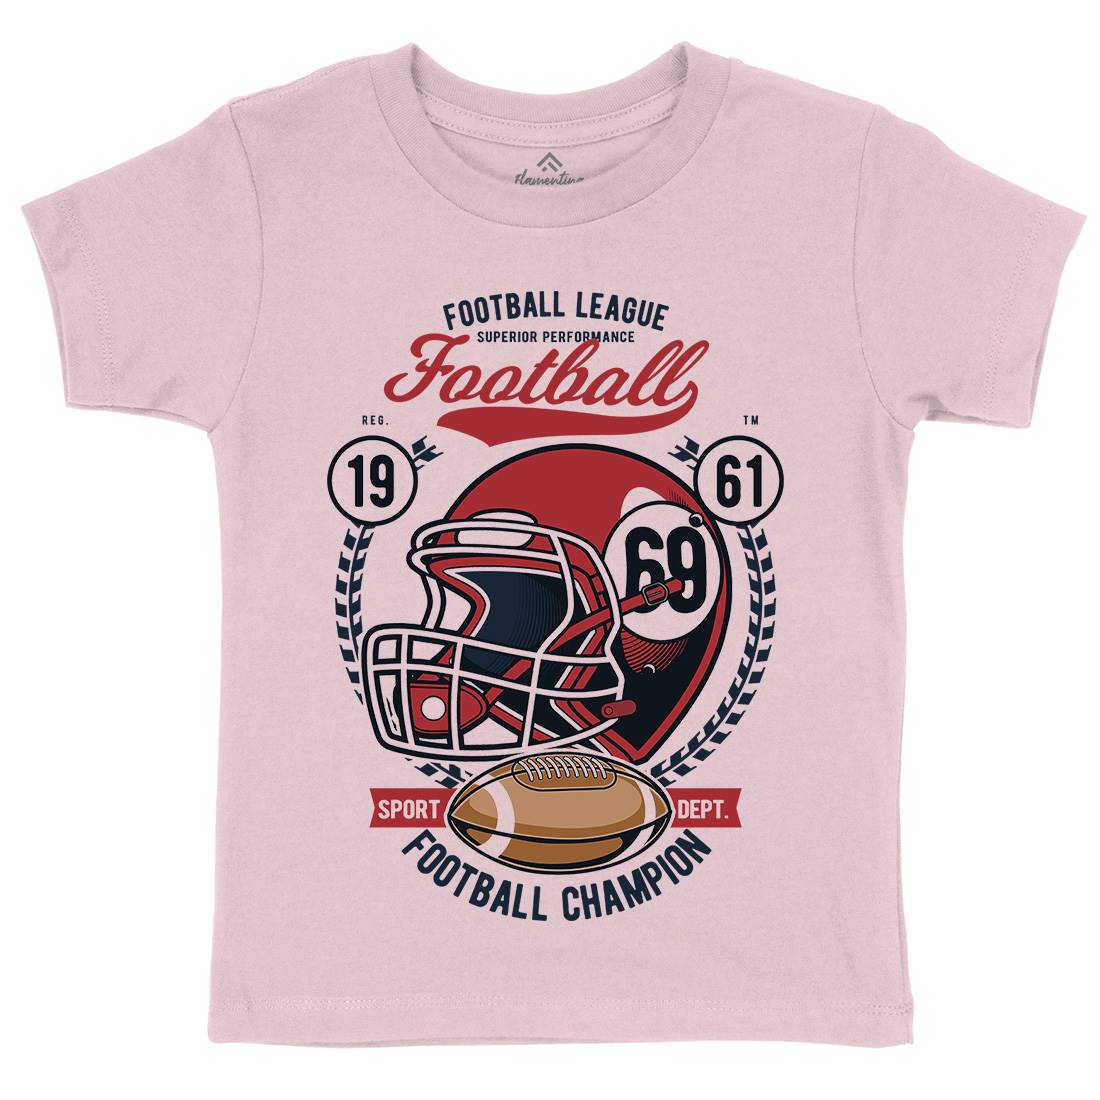 Football League Helmet Kids Crew Neck T-Shirt Sport C362